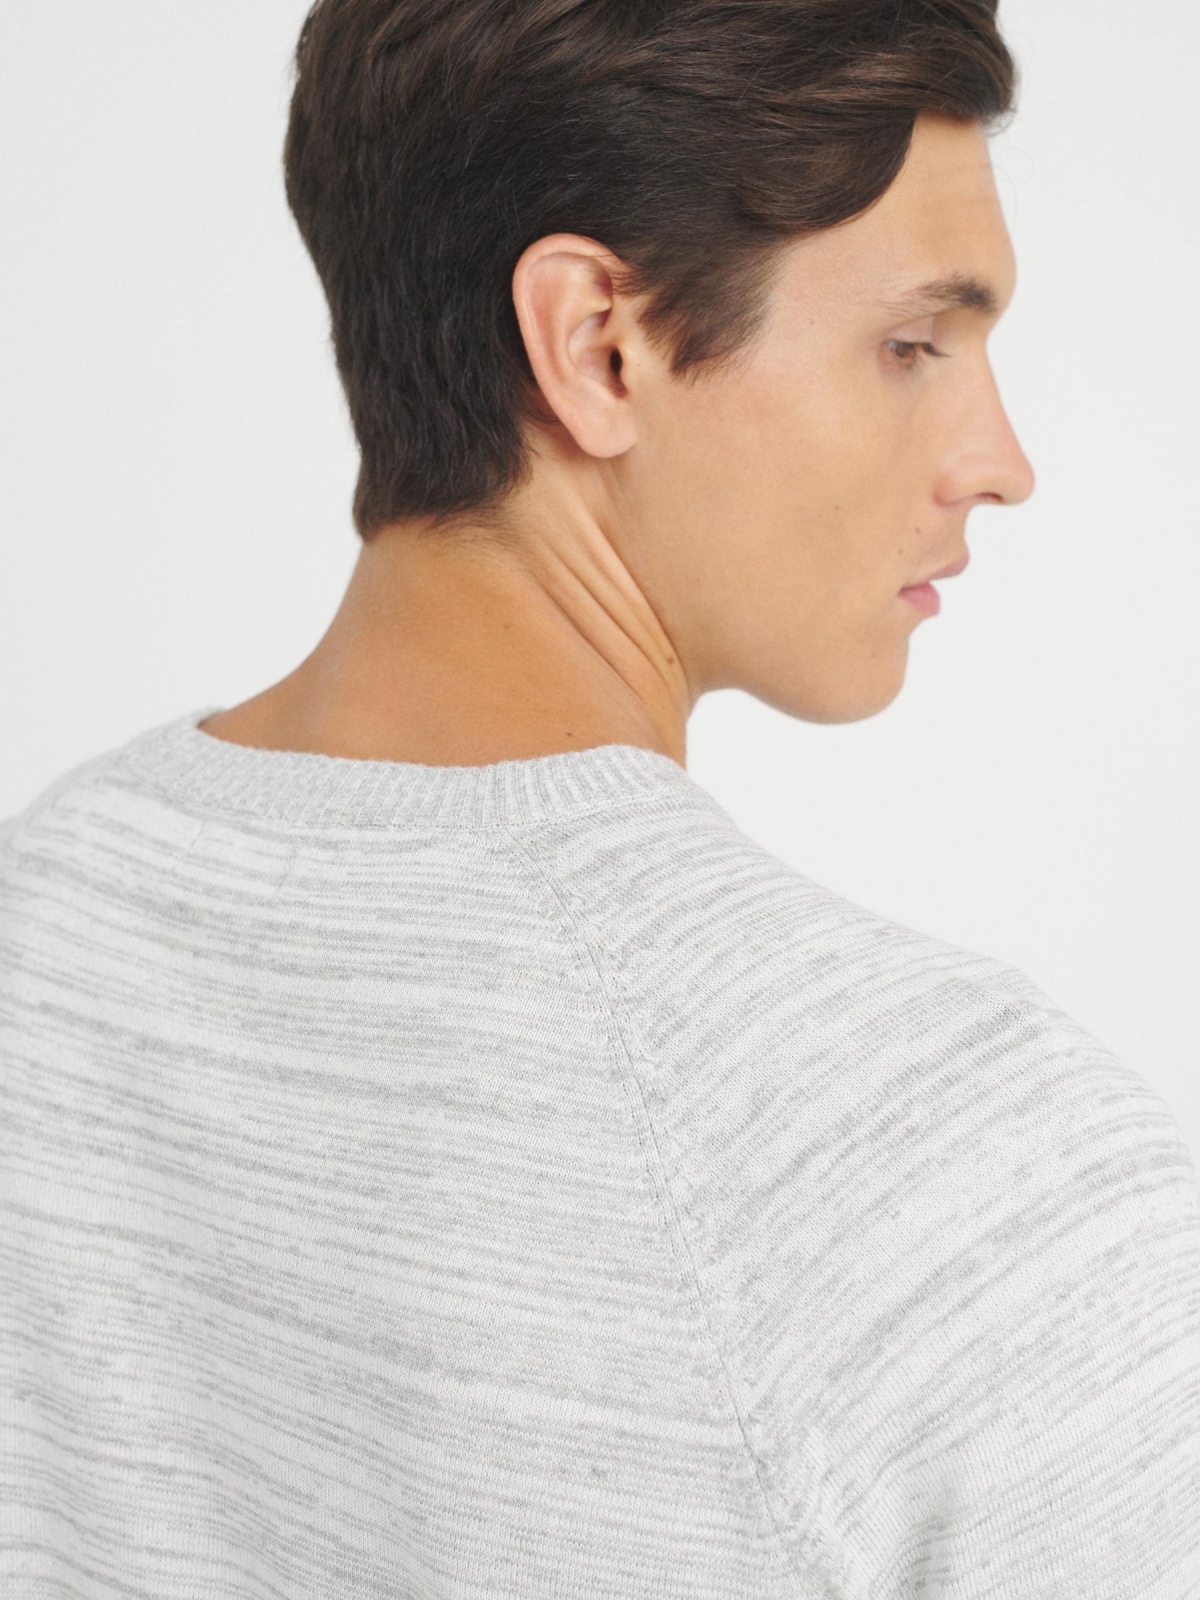 Basic mottled sweater light grey detail view